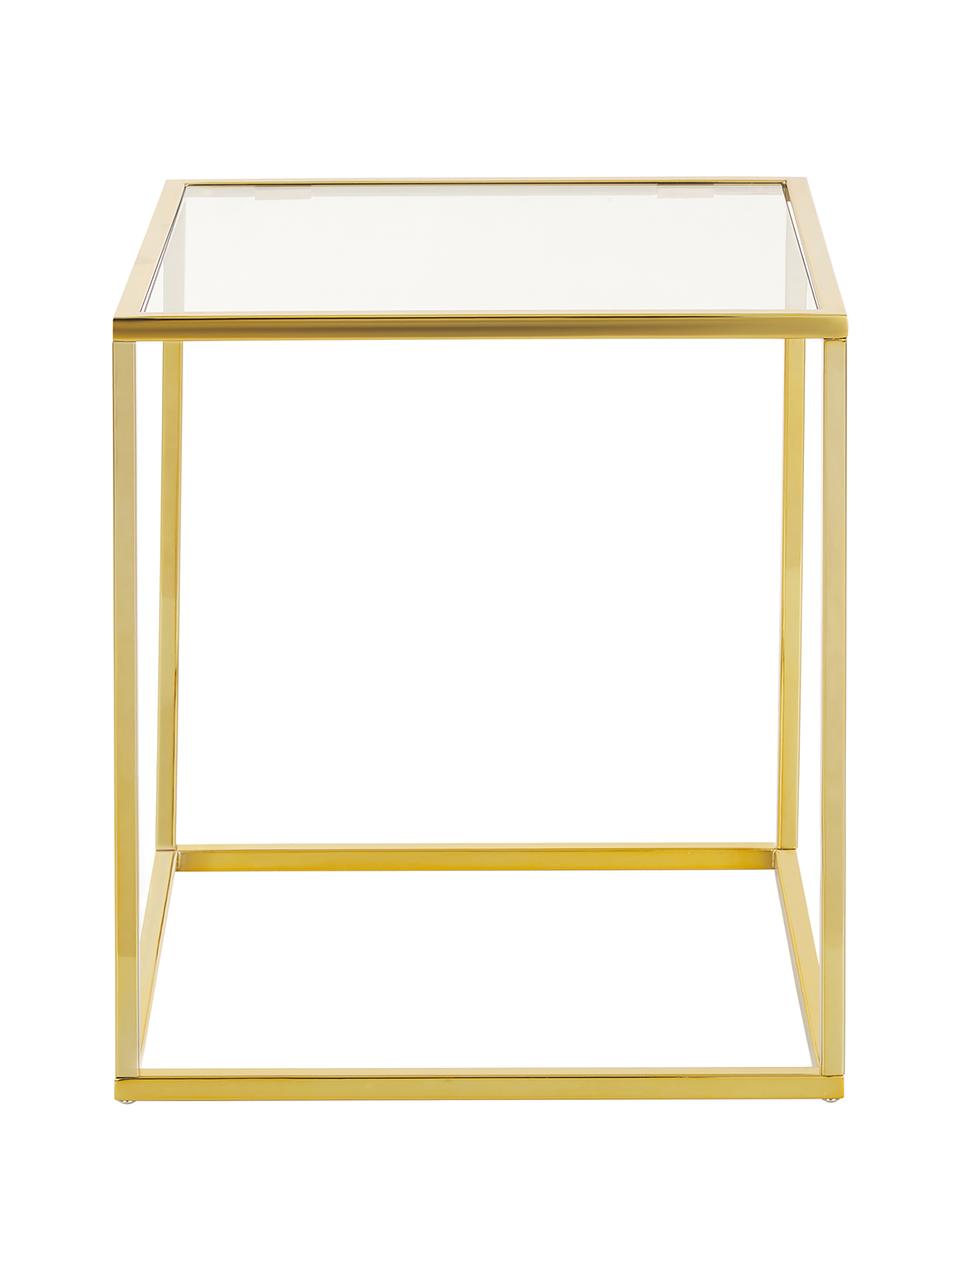 Tavolino dorato con piano in vetro Maya, Struttura: metallo zincato, Piano: vetro trasparente Struttura: dorato lucido, Larg. 45 x Alt. 50 cm